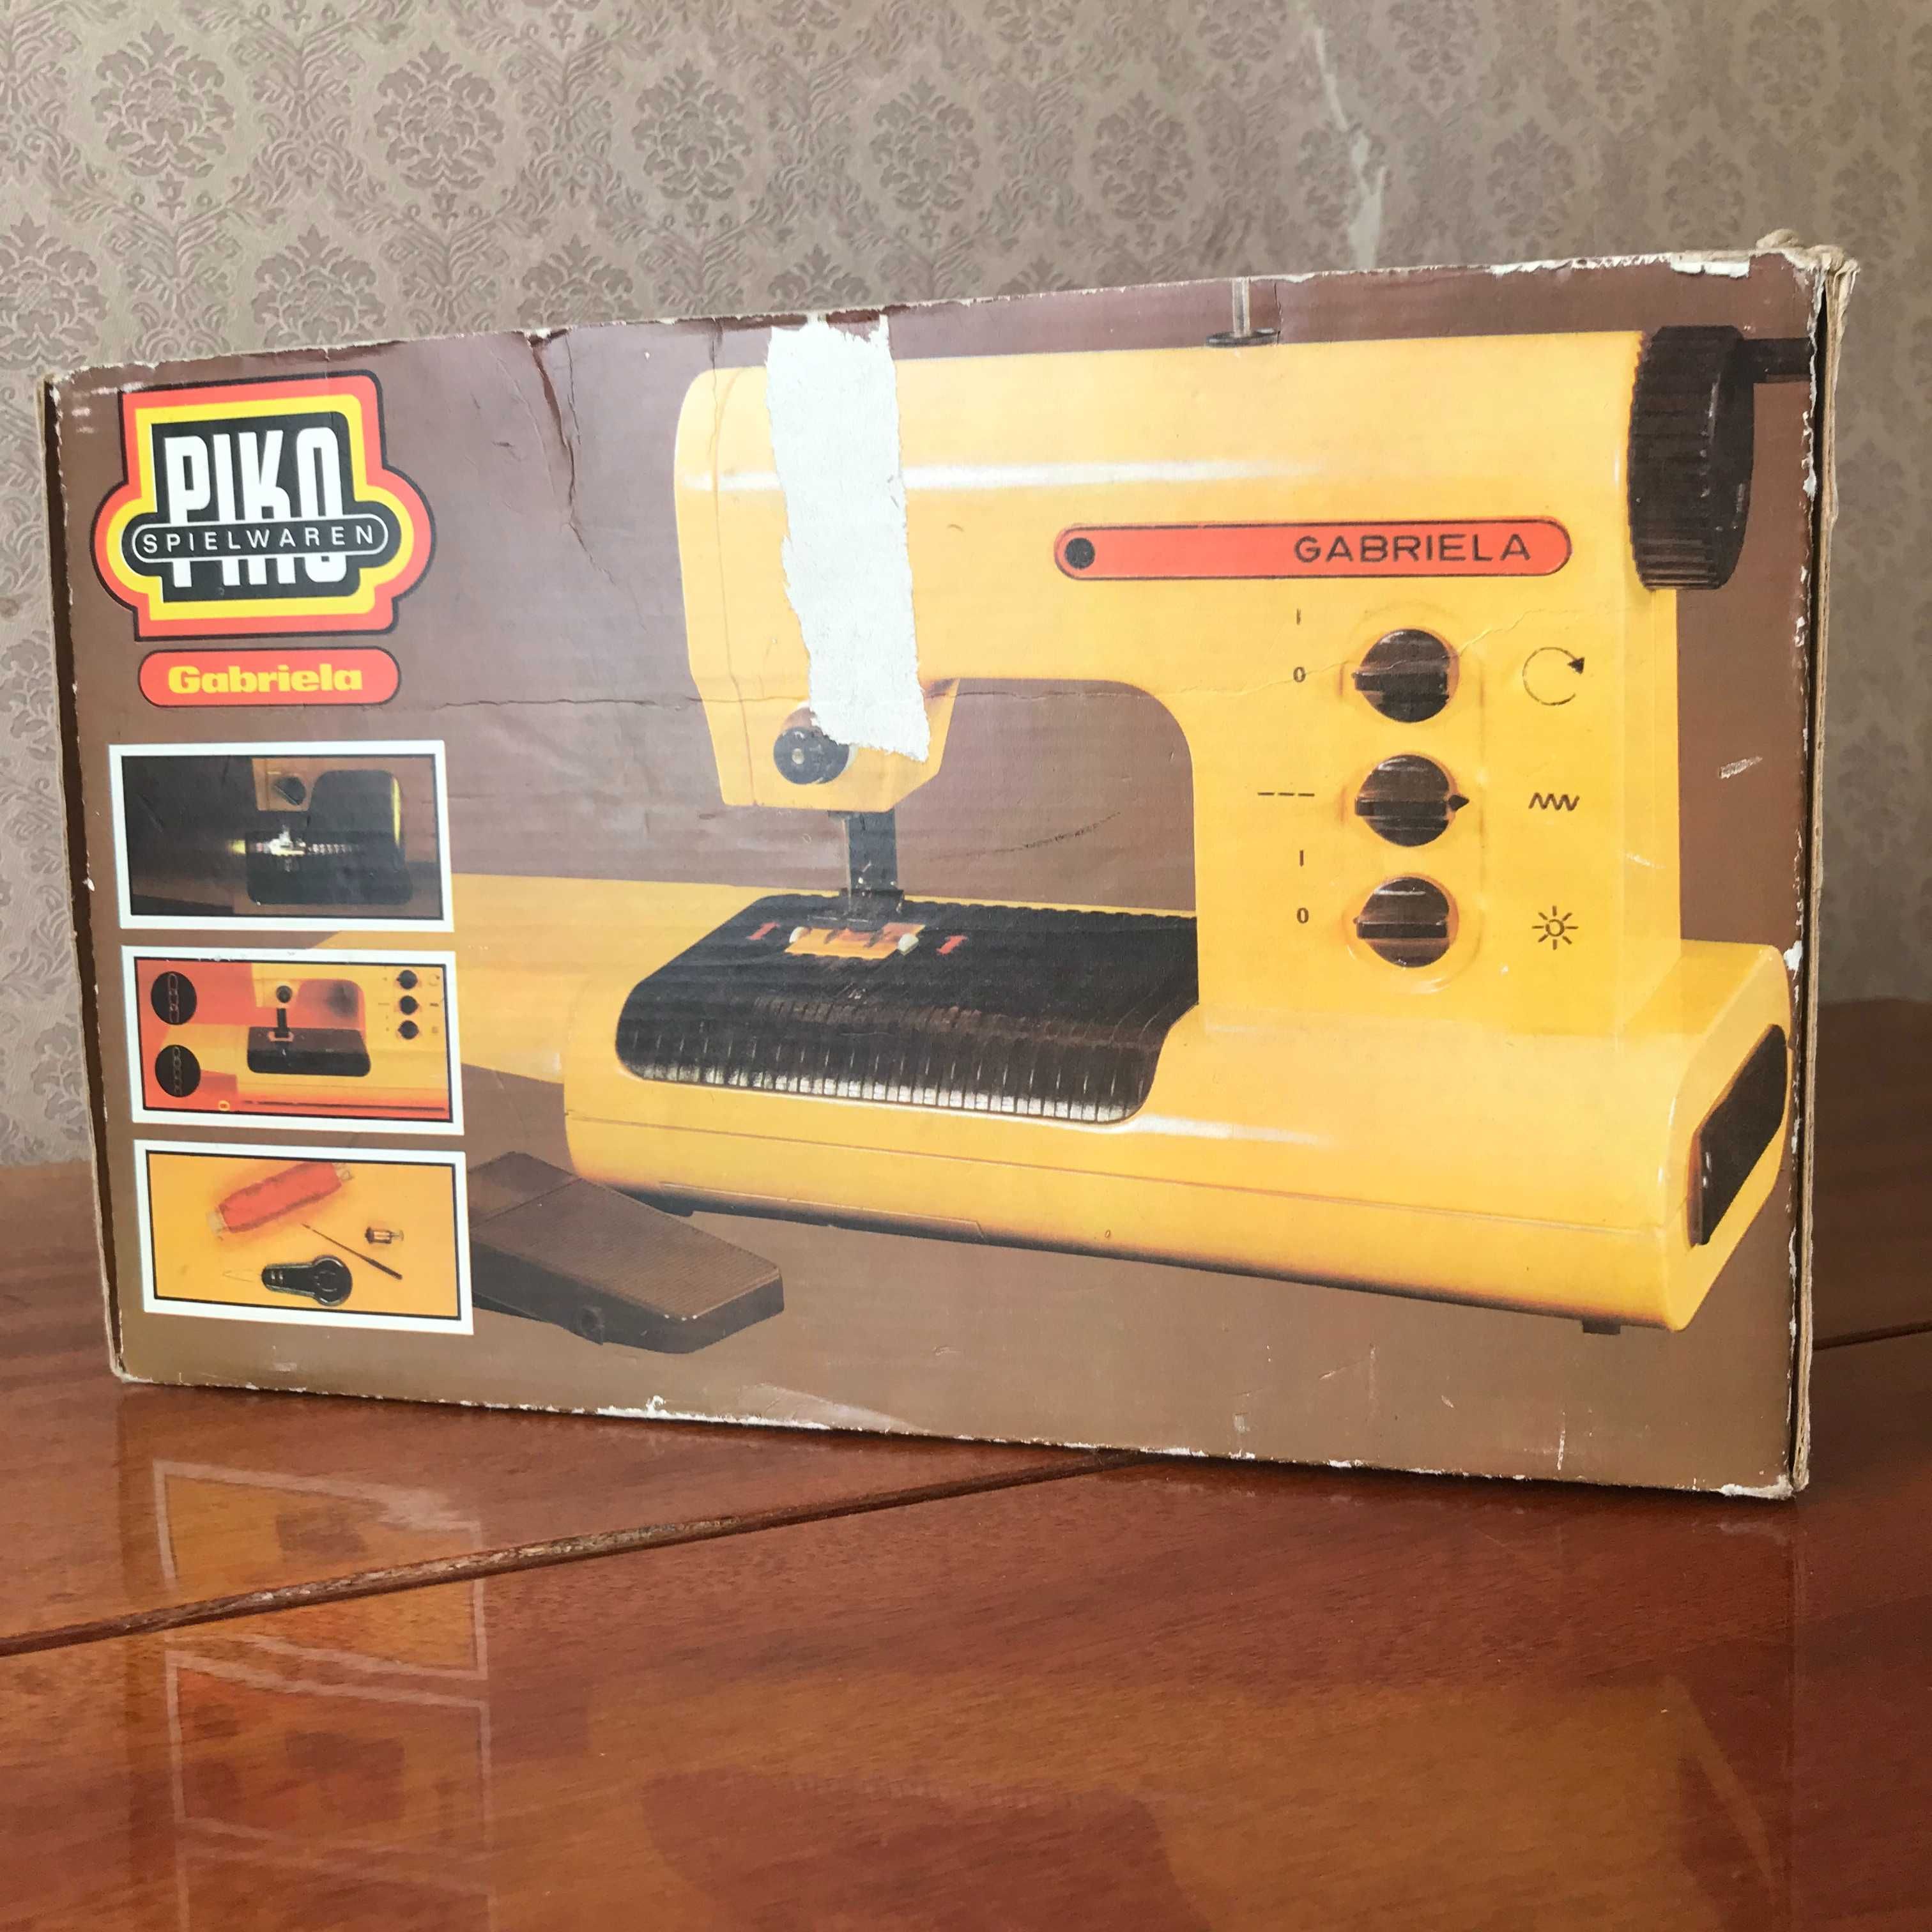 Детская швейная машинка Gаbriеla, Piko, ГДР - игрушка времён CCCP